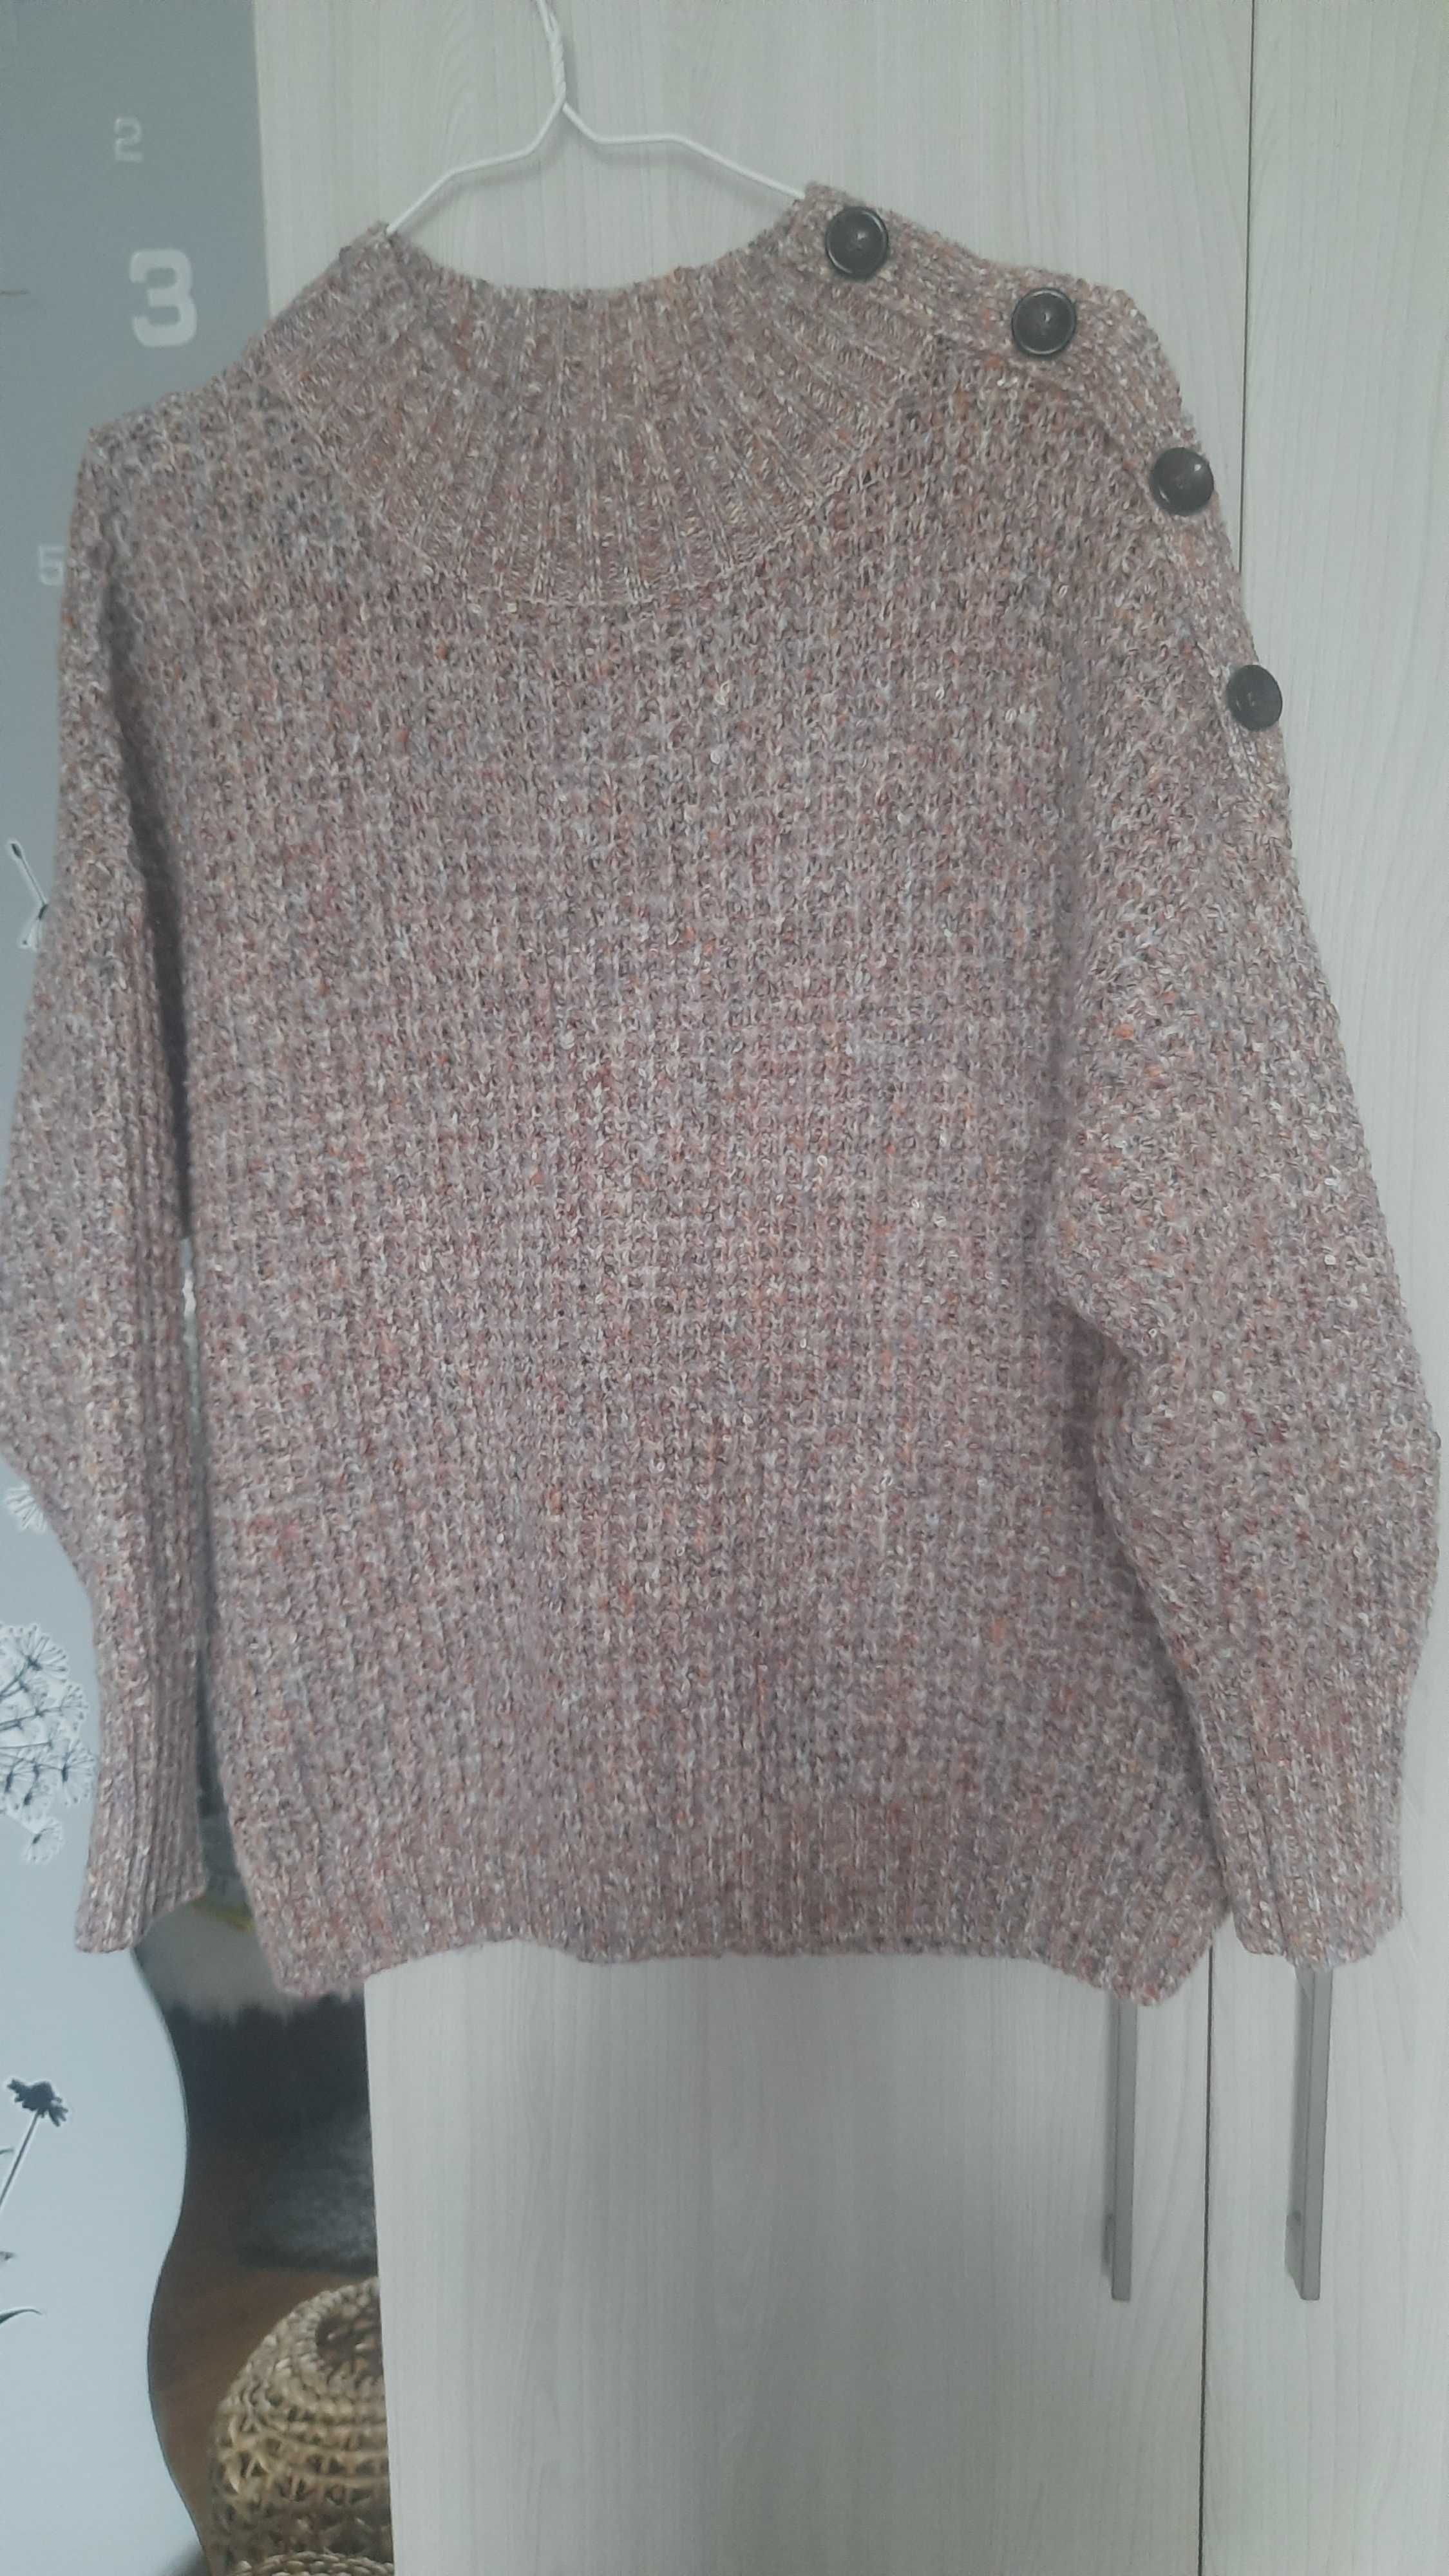 Obszerny swetr kolorowy.